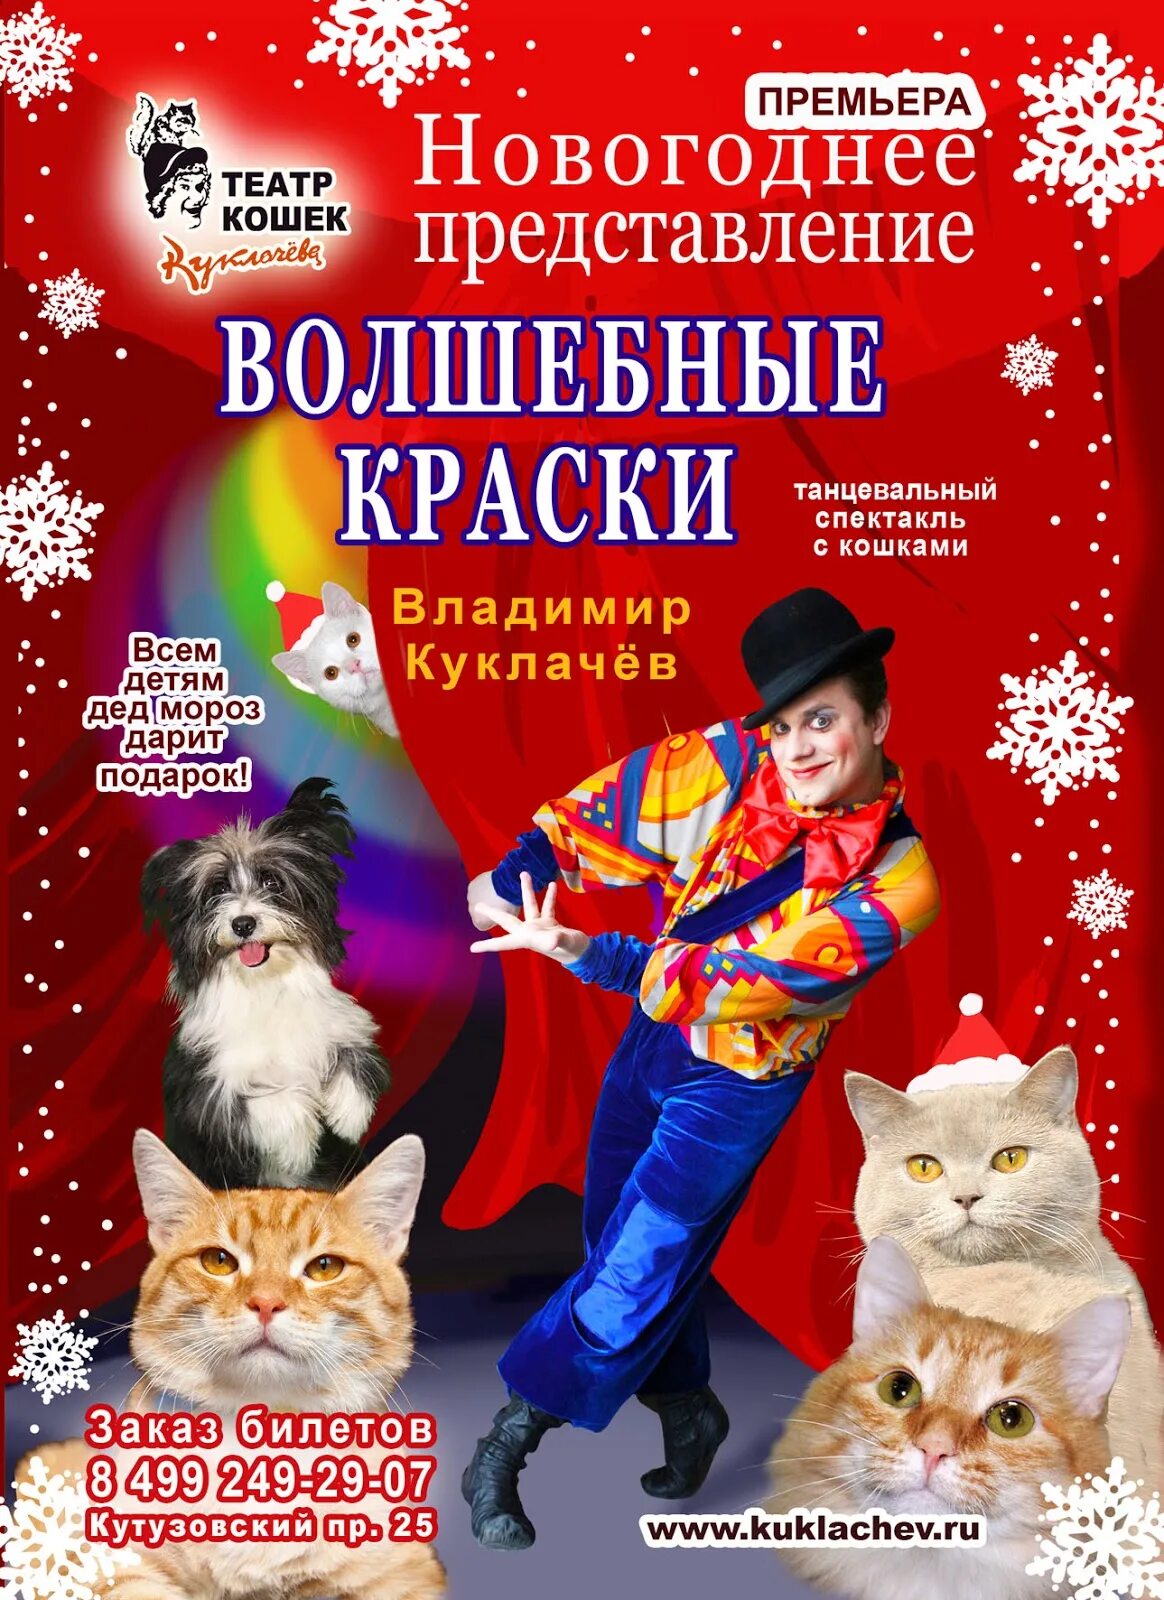 Представление Куклачева. Куклачев новогоднее представление. Театр кошек спектакли